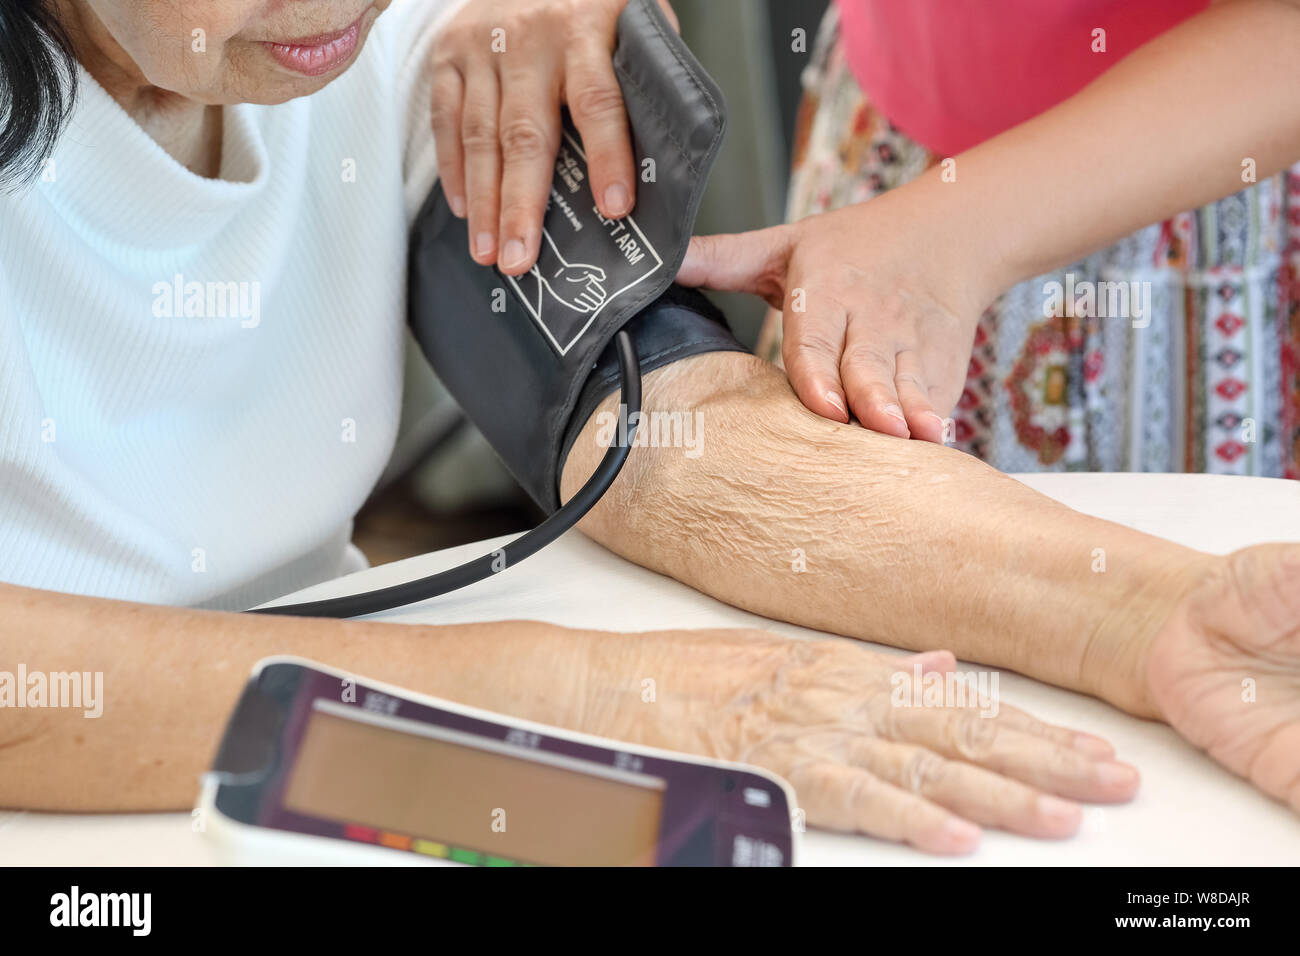 Fille contrôle de la pression artérielle (hypertension) de personnes âgées à la maison mère Banque D'Images